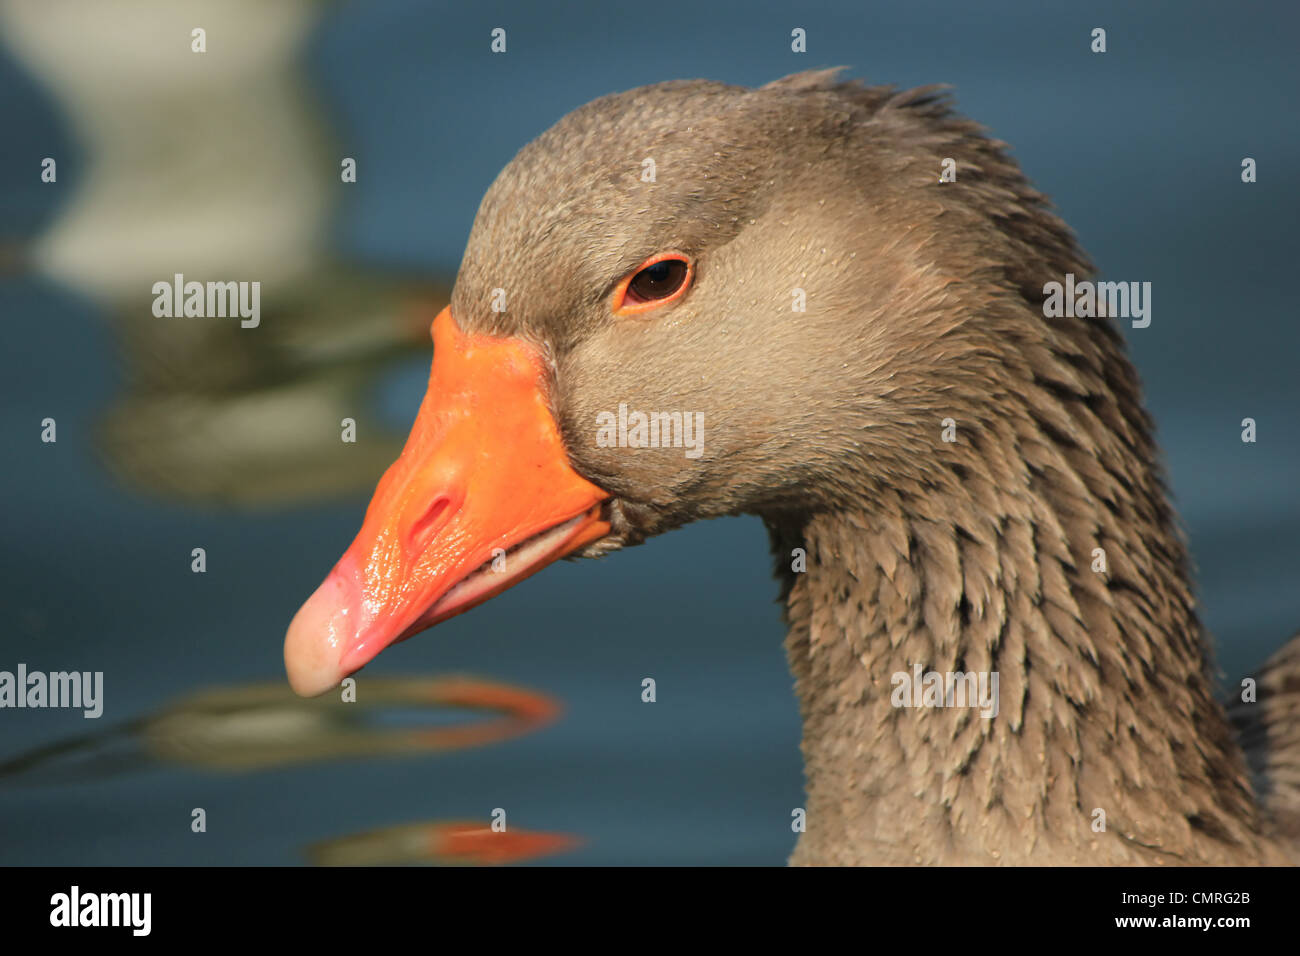 Retrato de un ganso salvaje gris y naranja en el agua Foto de stock